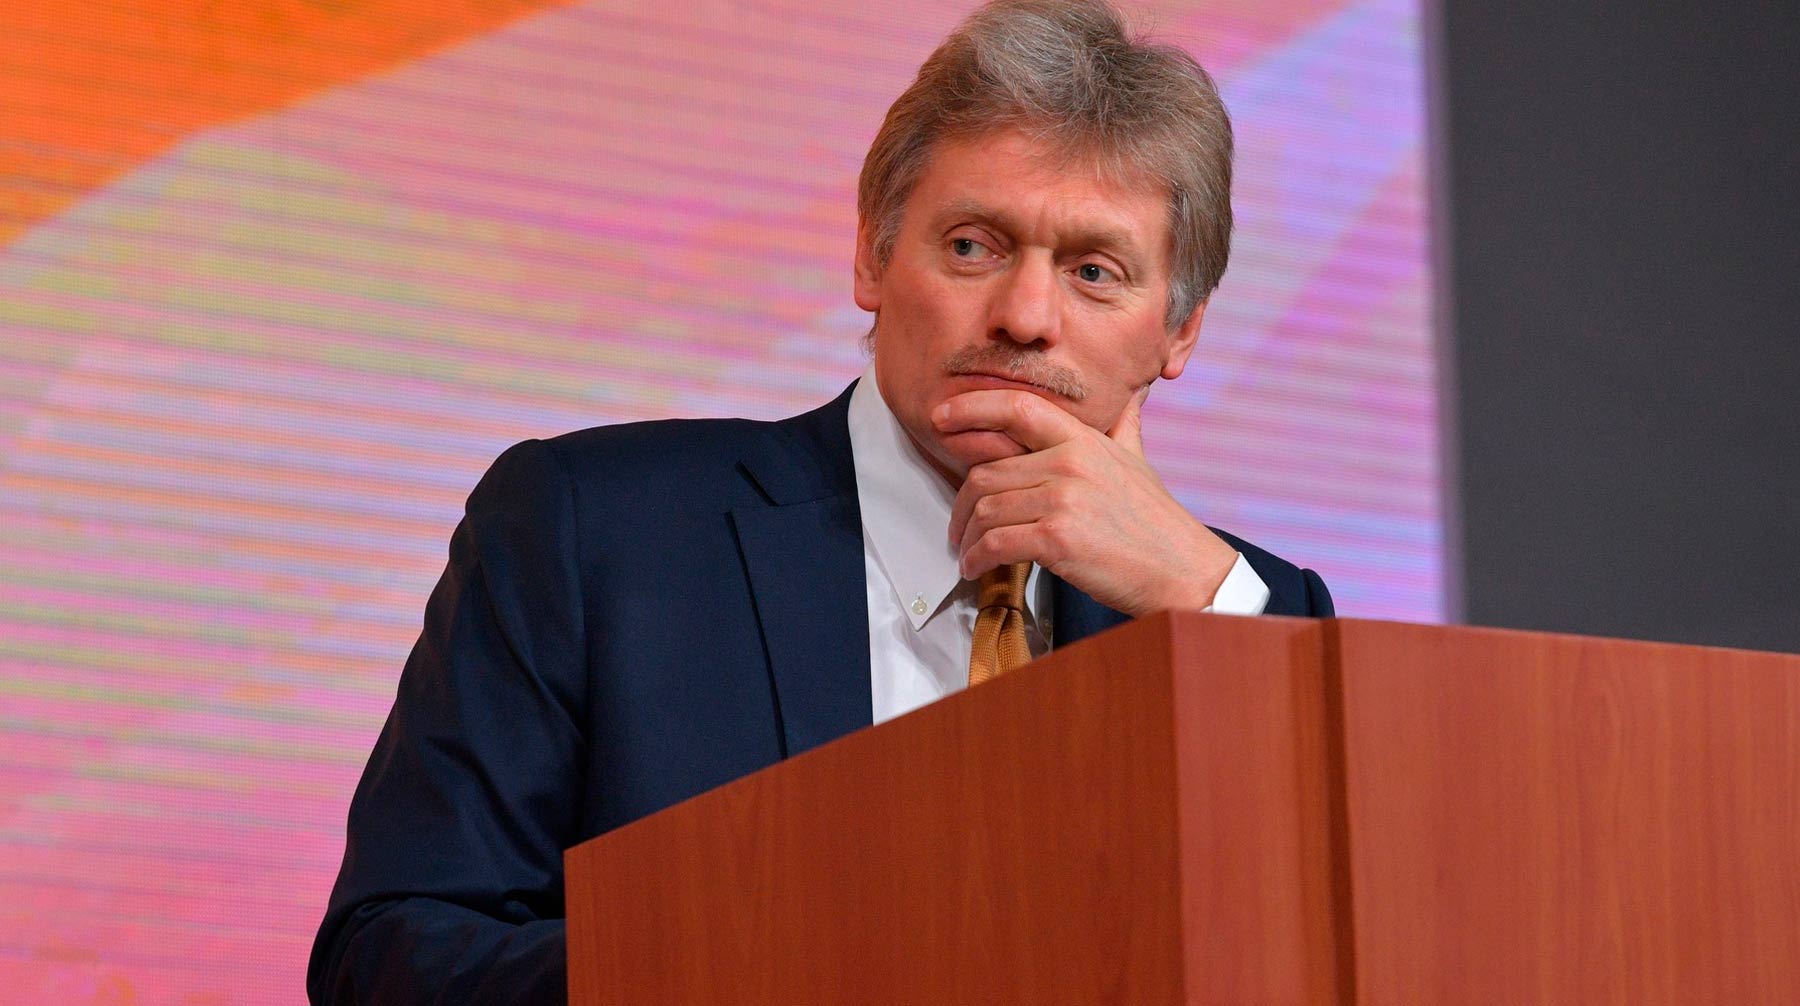 Пресс-секретарь президента РФ отметил, что страна прошла самую острую фазу пандемии с наименьшими потерями Фото: © Kremlin Pool